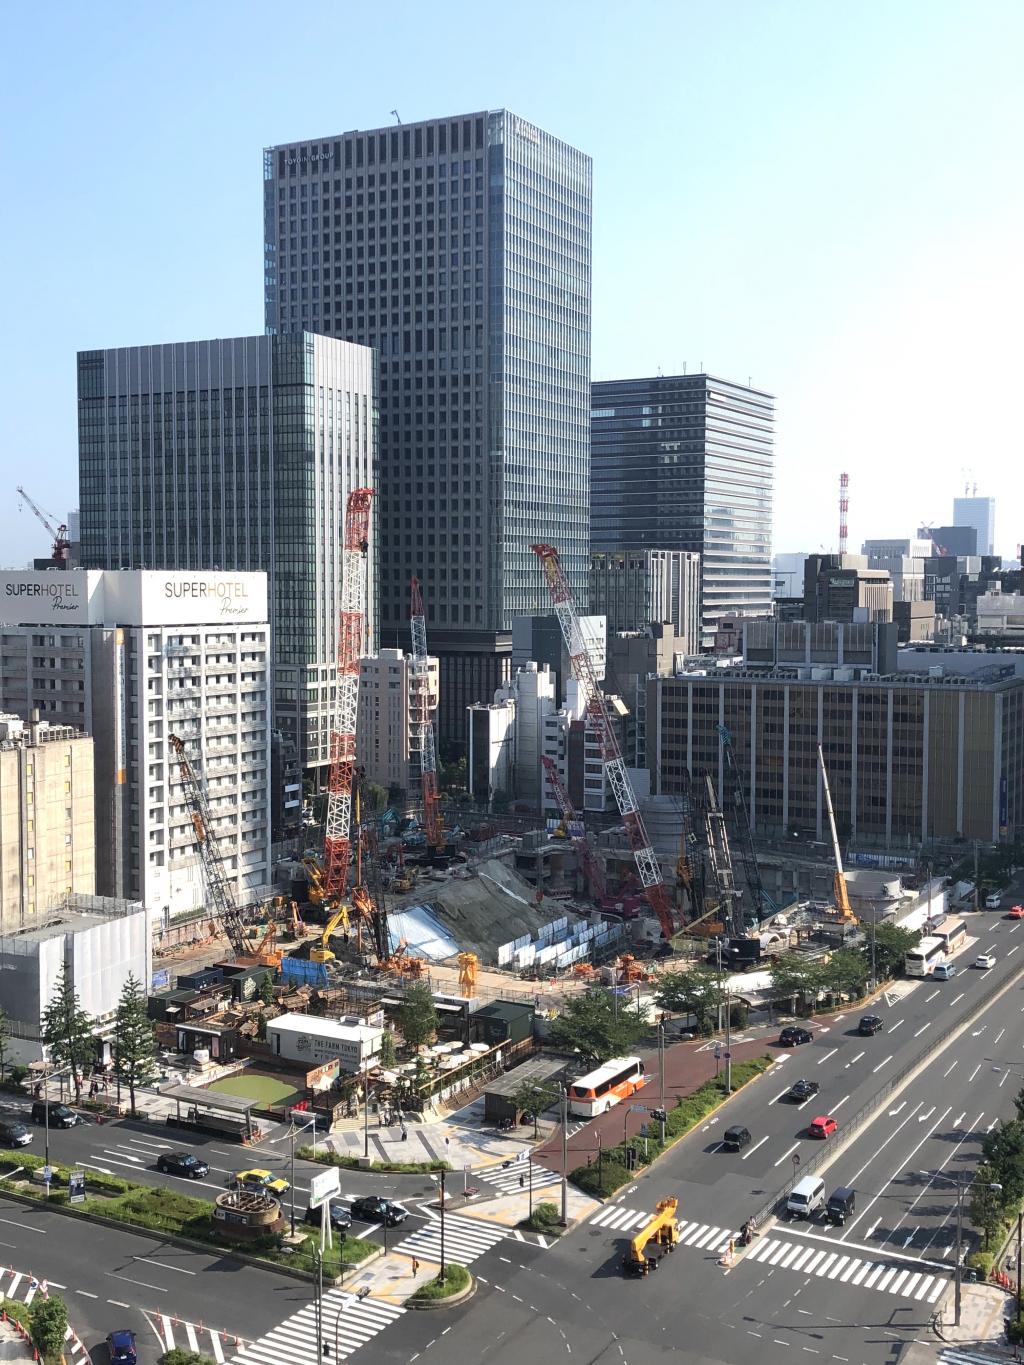  工事が進む東京駅前
（八重洲二丁目北地区第一種市街地再開発事業）